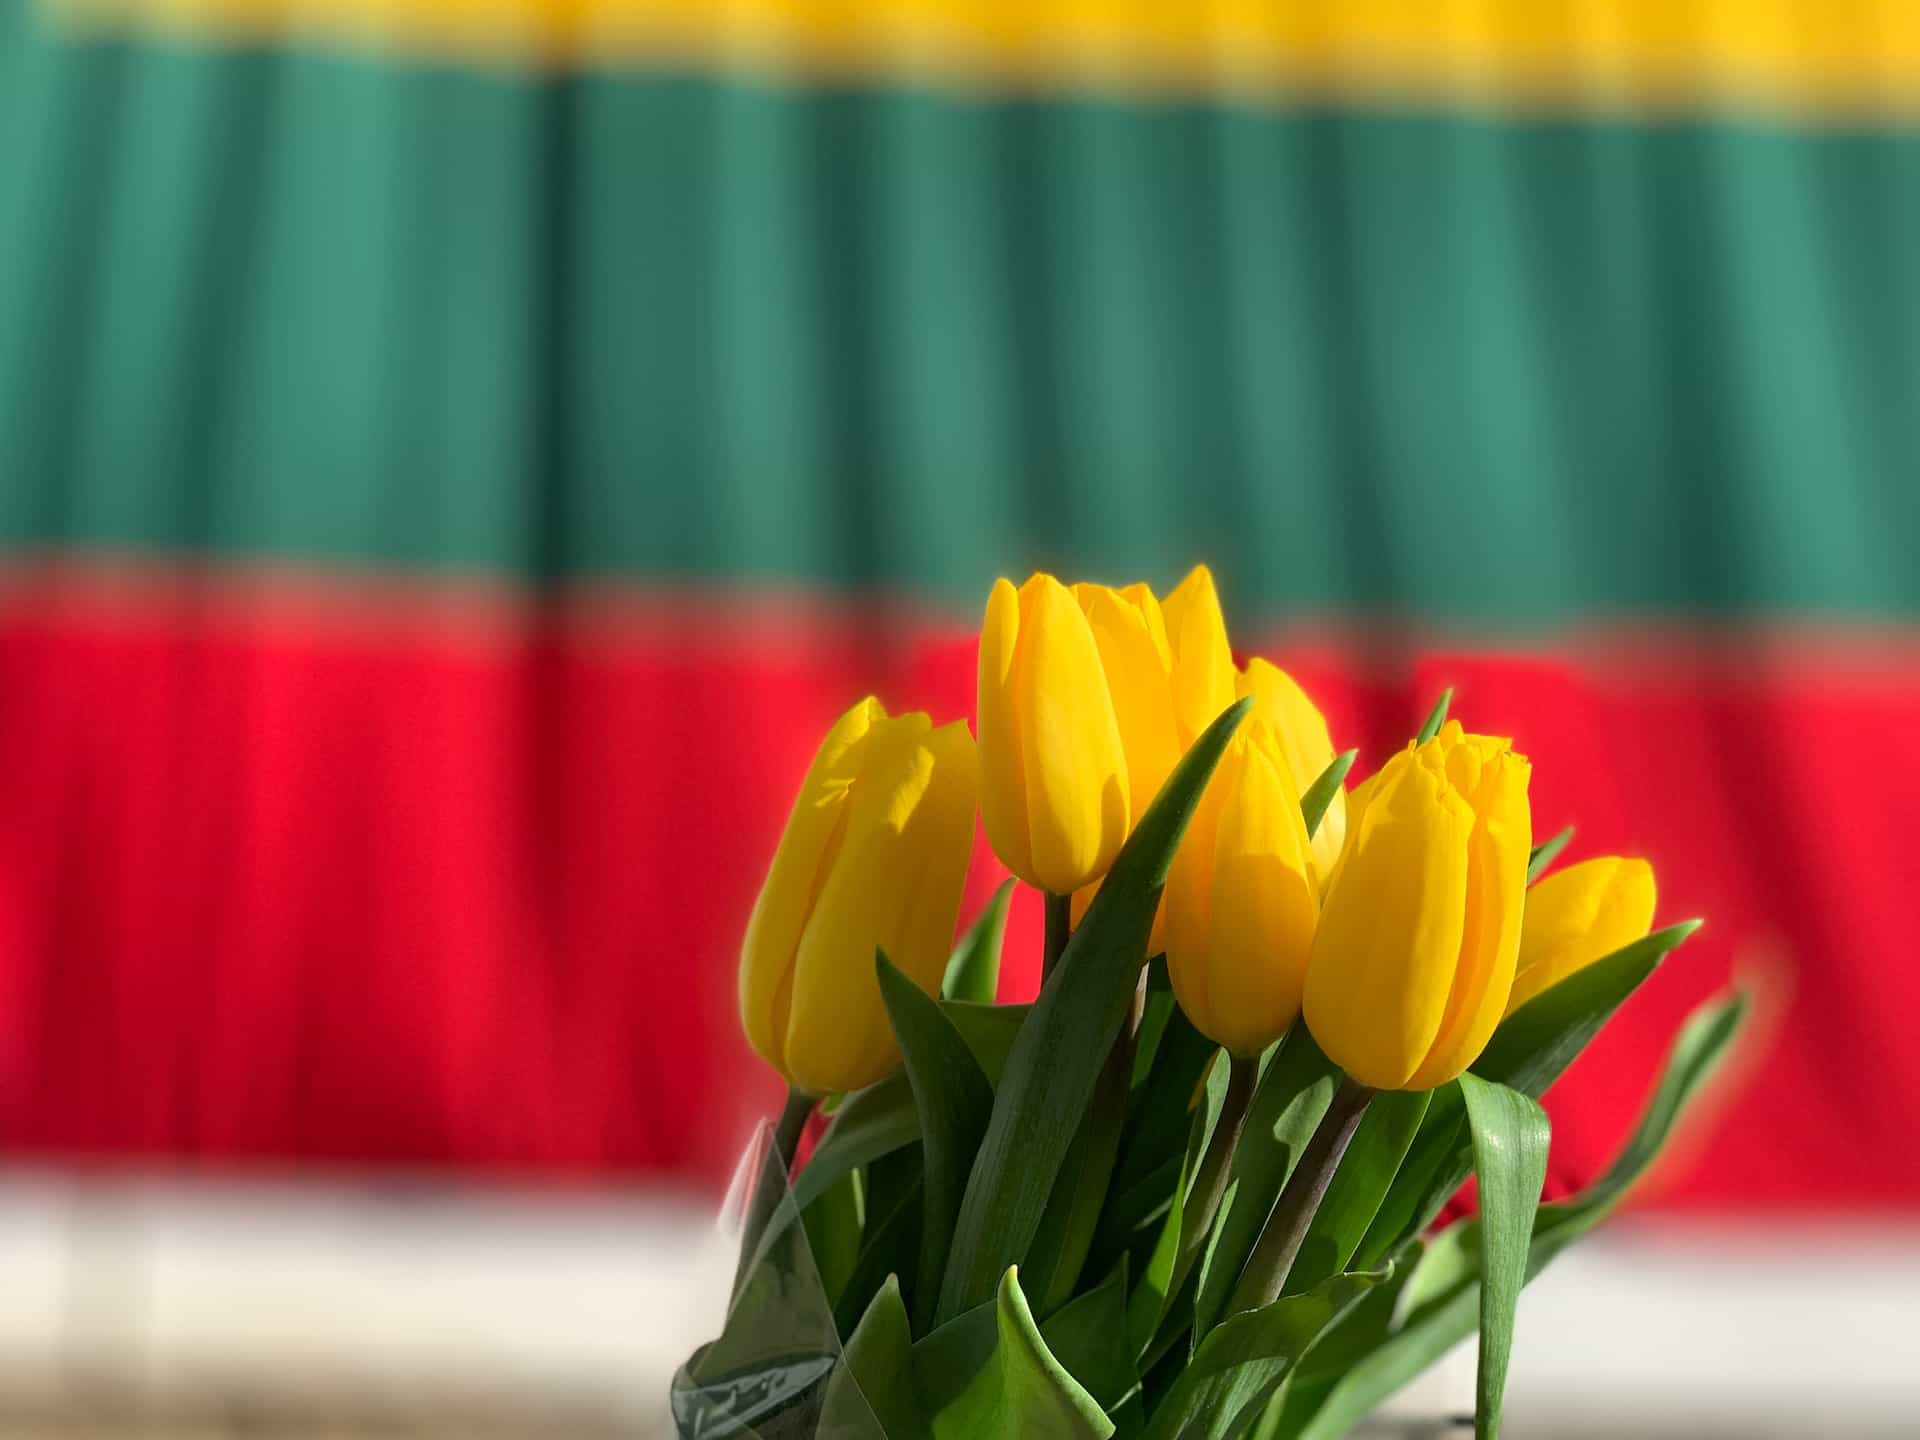 Tulip kuning dengan bendera Lituania di latar belakang.